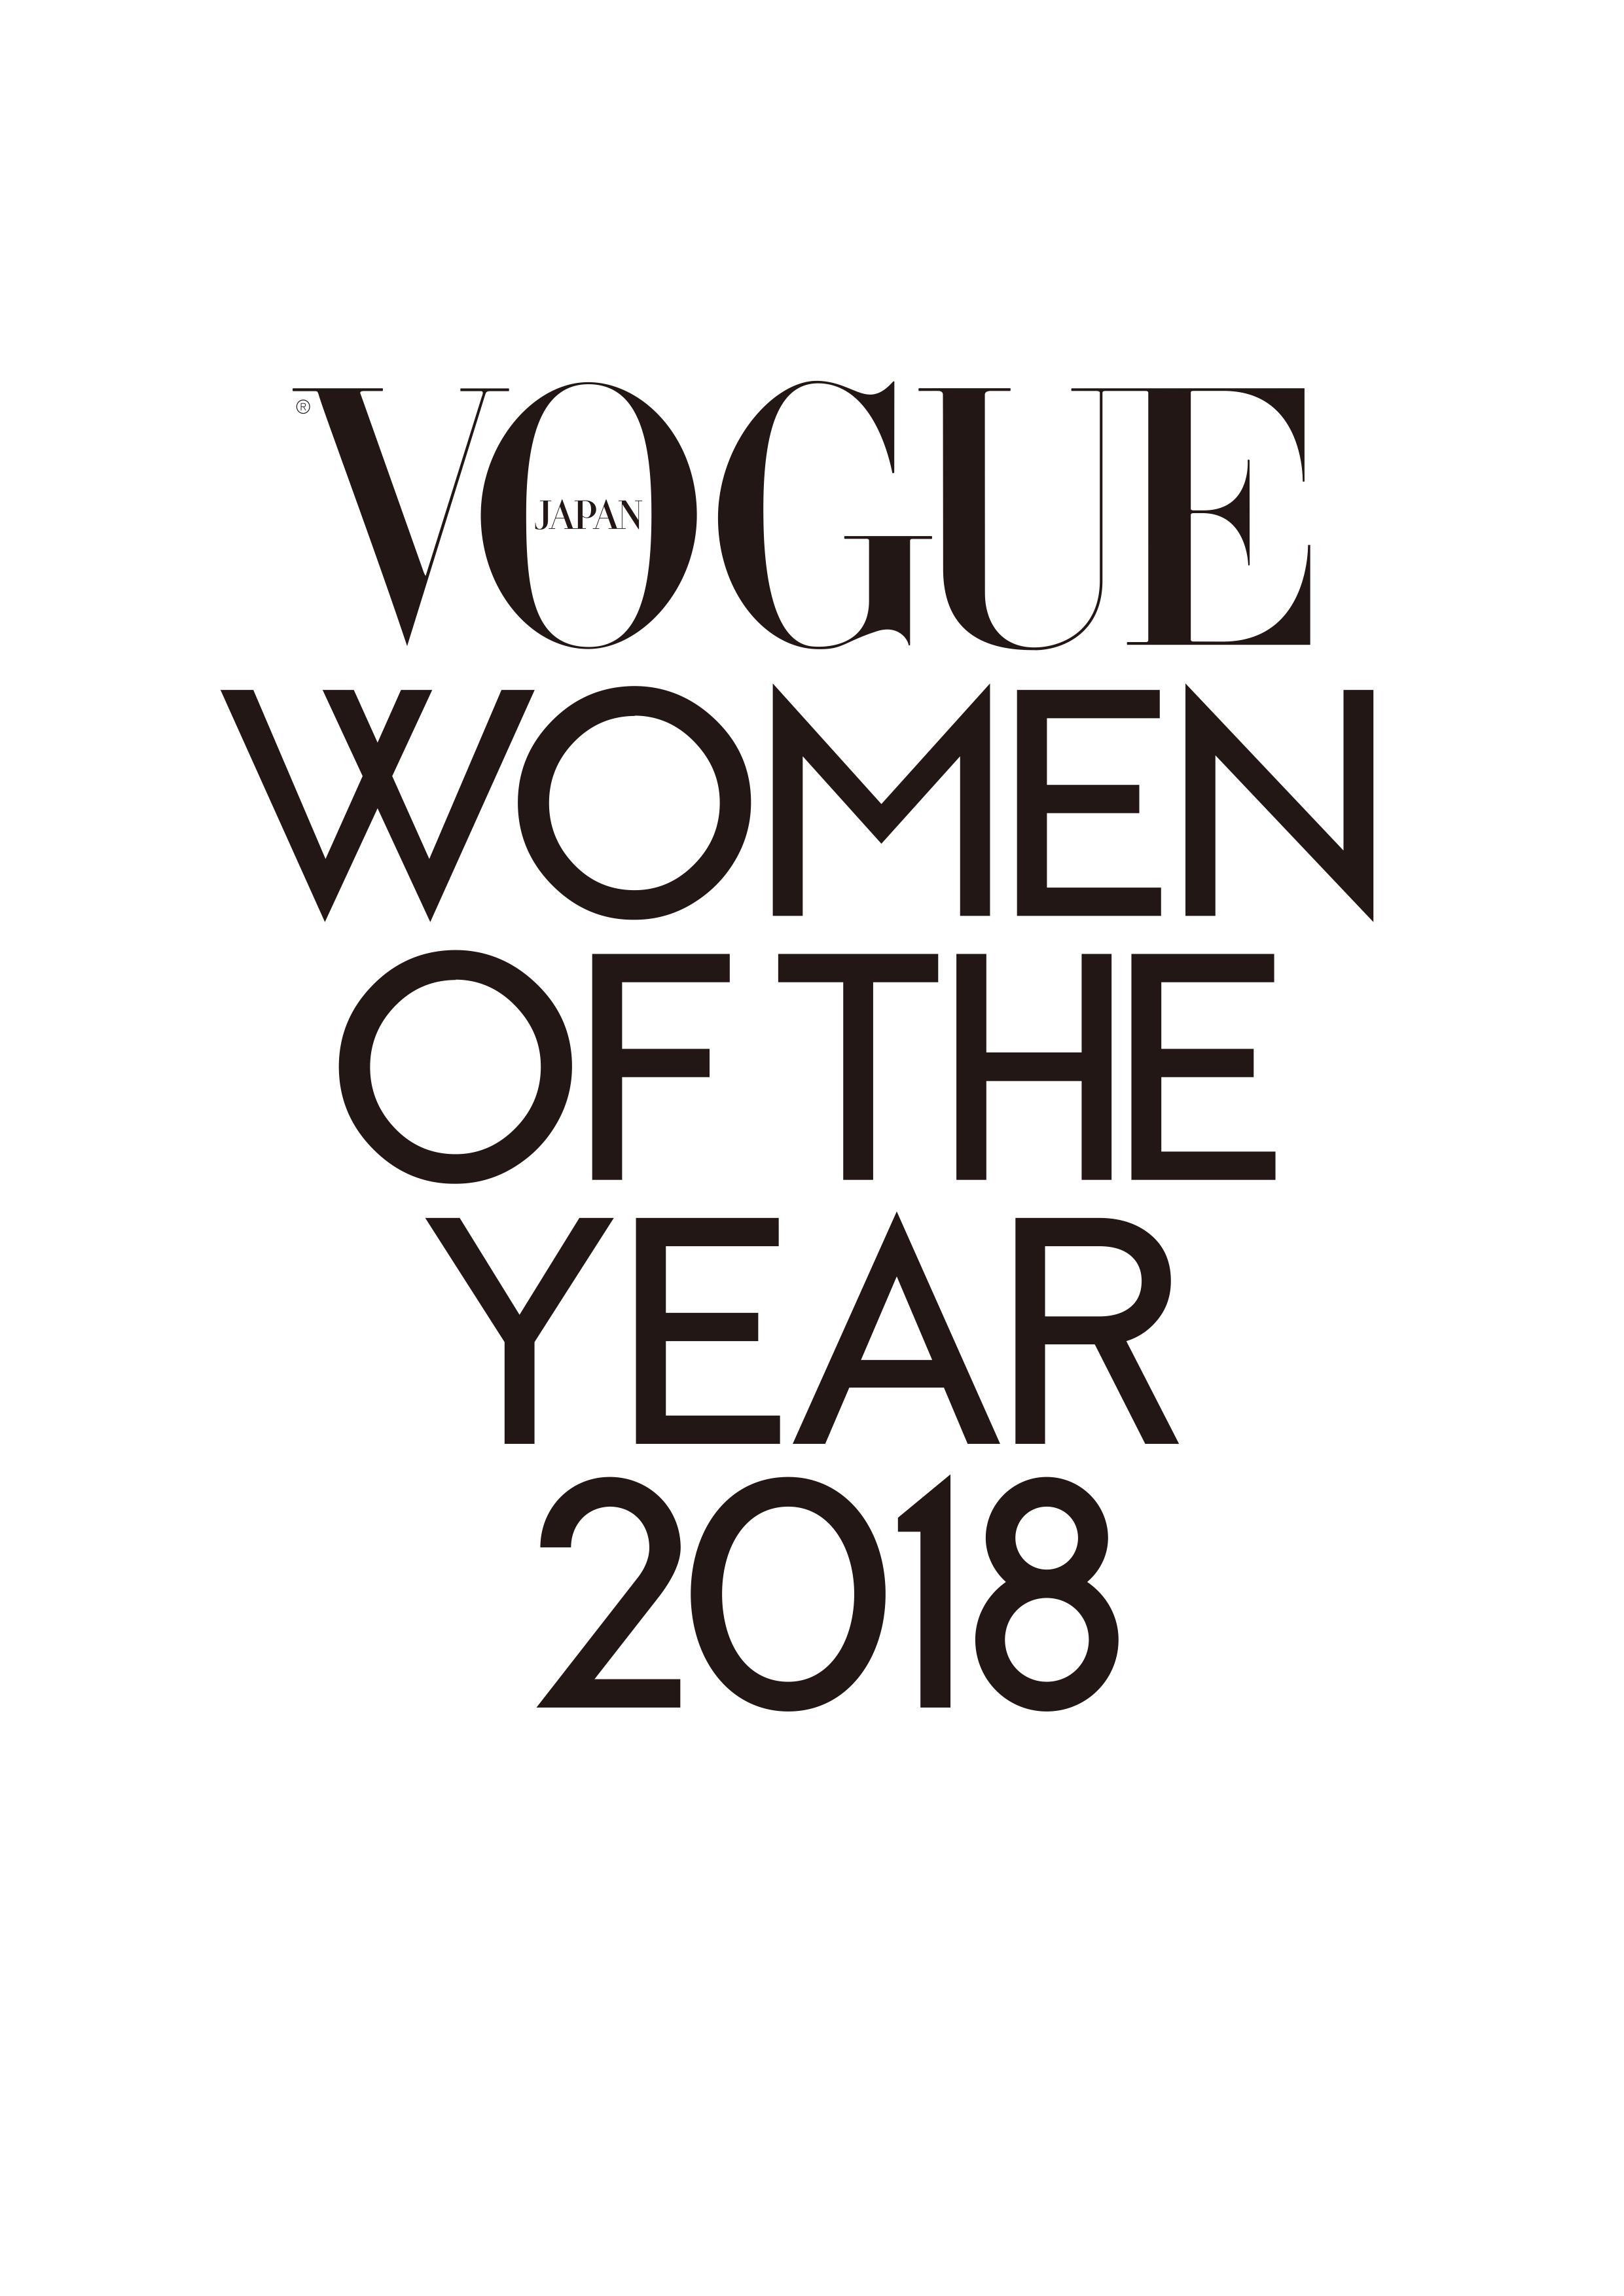 今年最も輝いた女性たちが一堂に集う Vogue Japan Women Of The Year 18 受賞者発表は11月26日に決定 コンデナスト ジャパンのプレスリリース